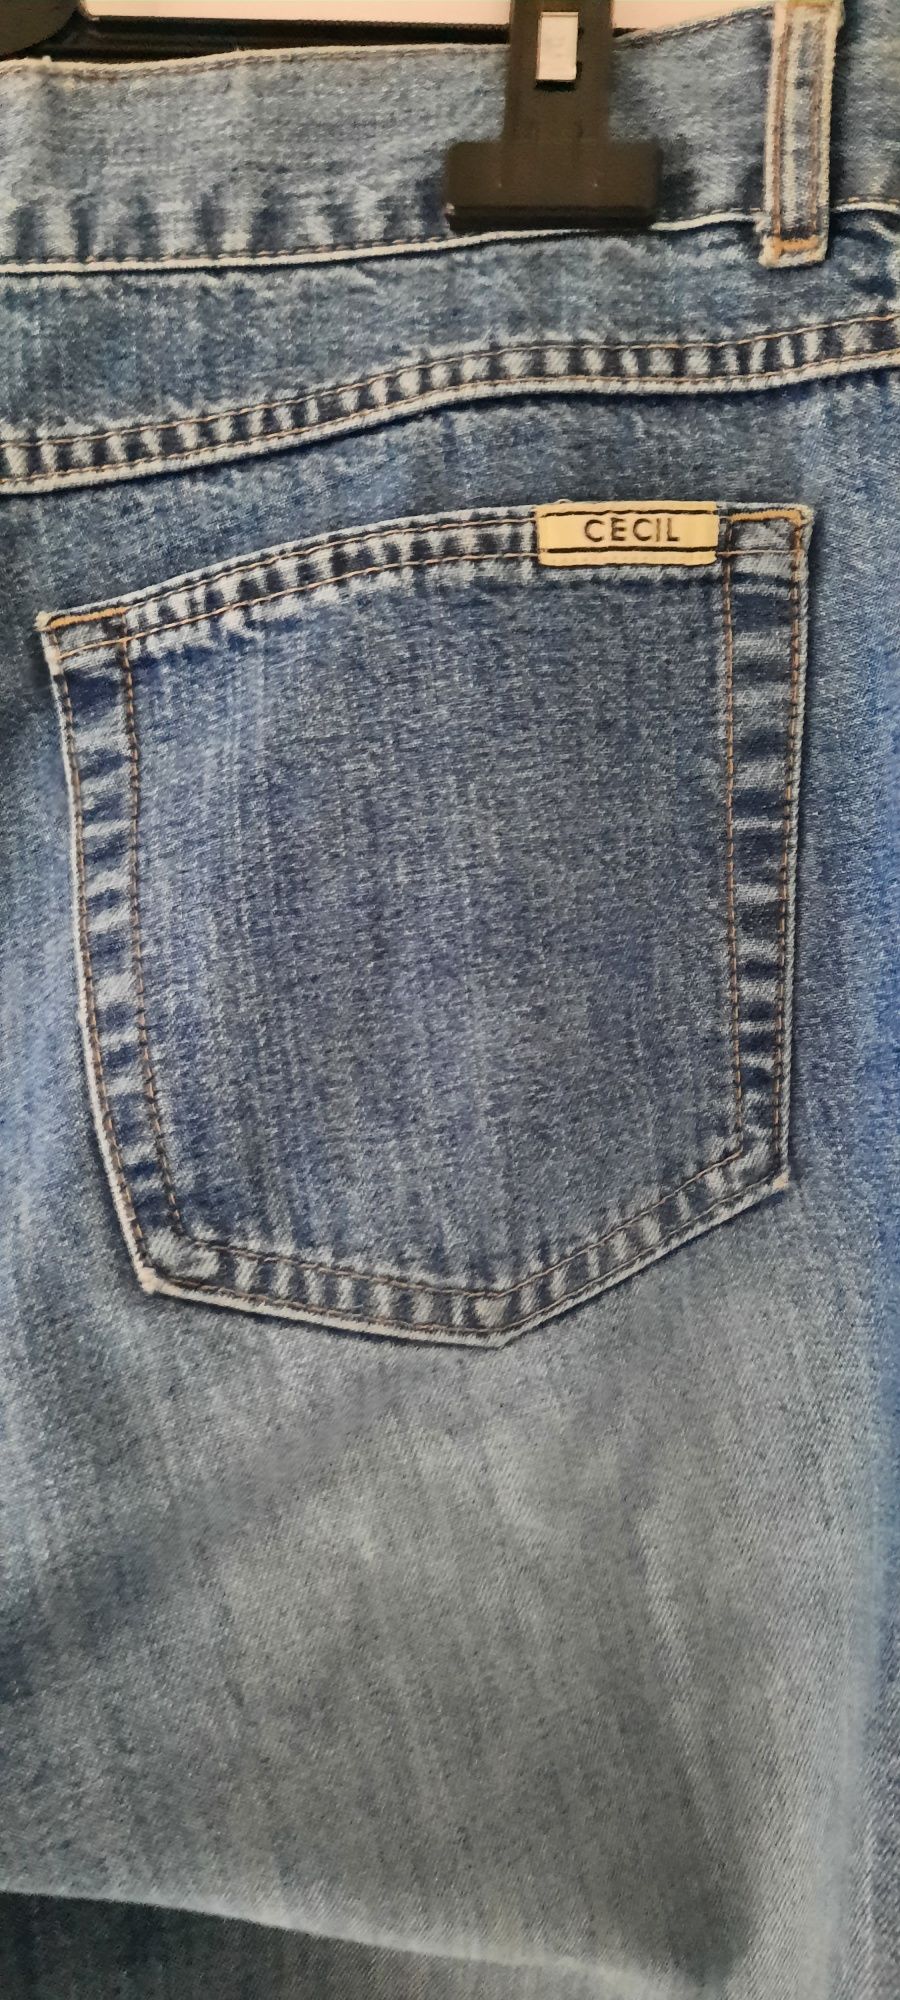 Spodnie jeans Cecil 33